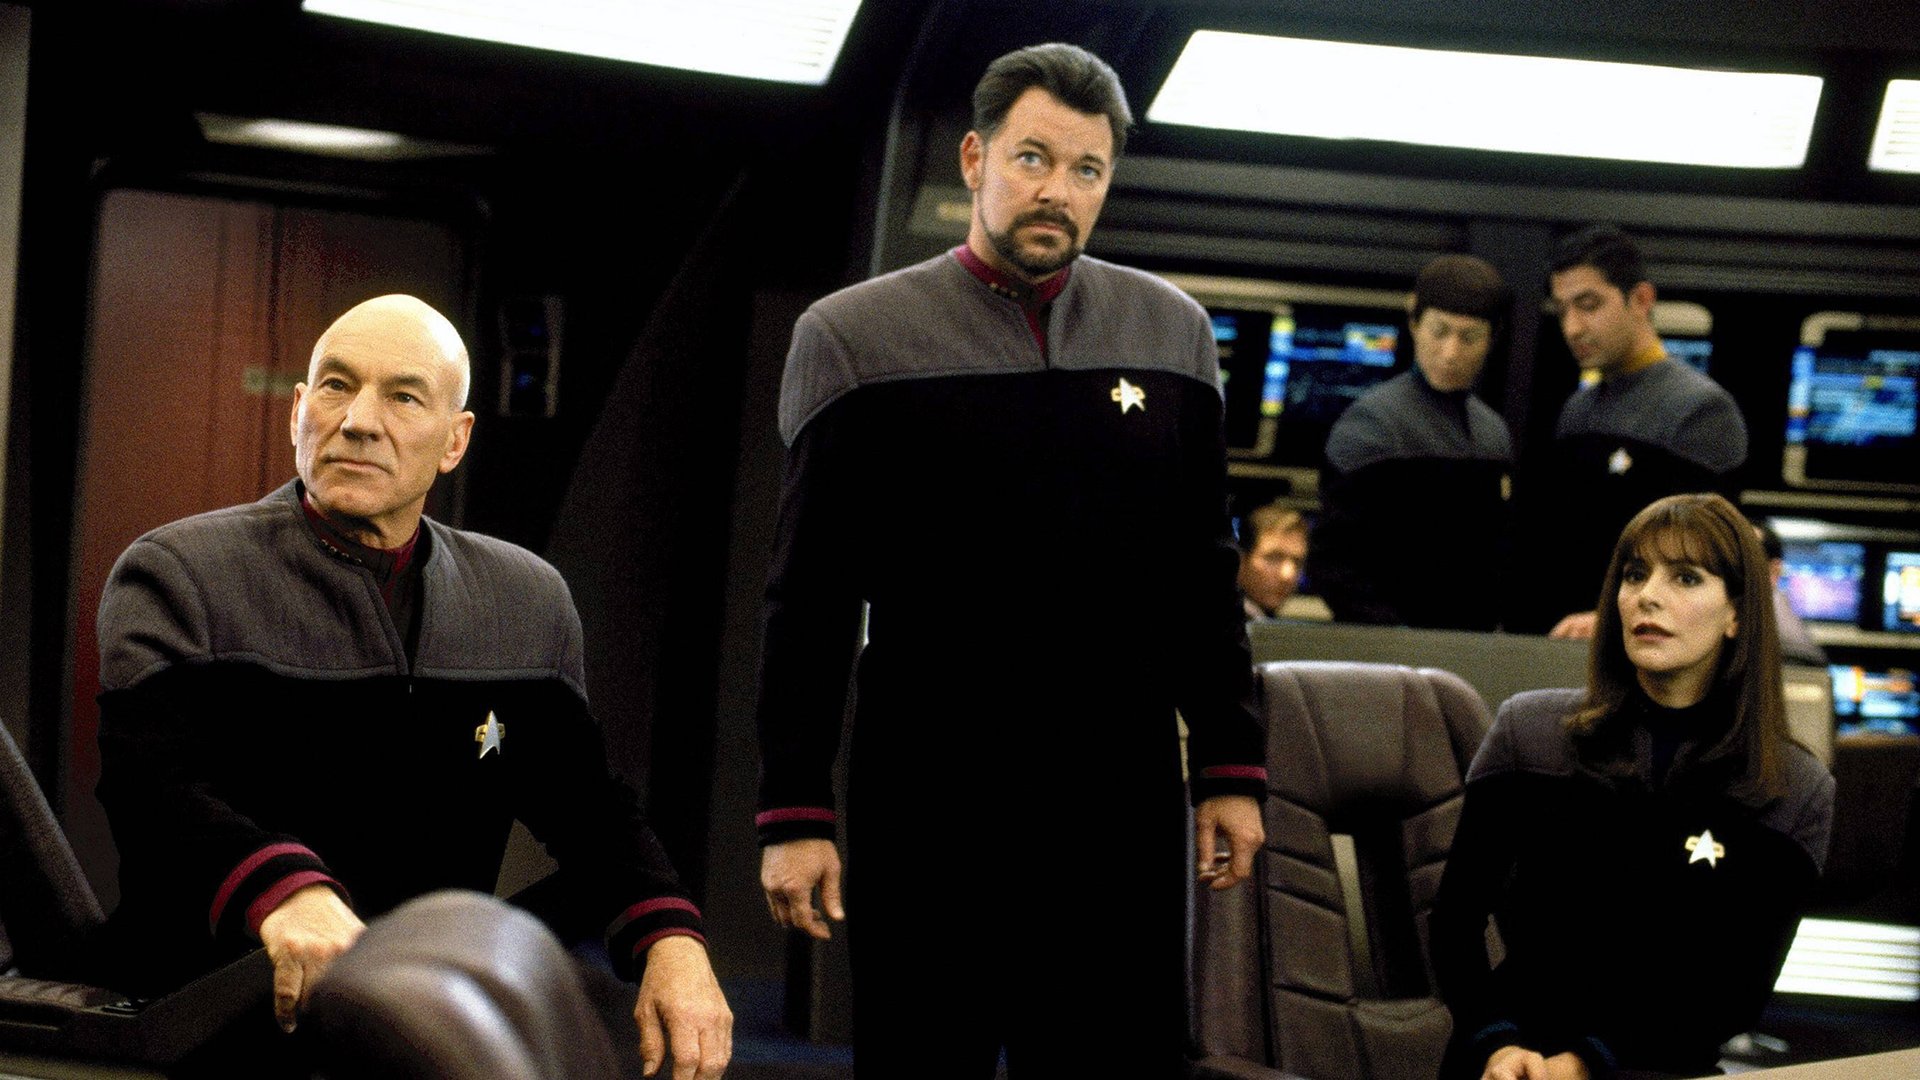 #Picard-Darsteller fällte vor 23 Jahren vernichtendes Urteil über Tom Hardy